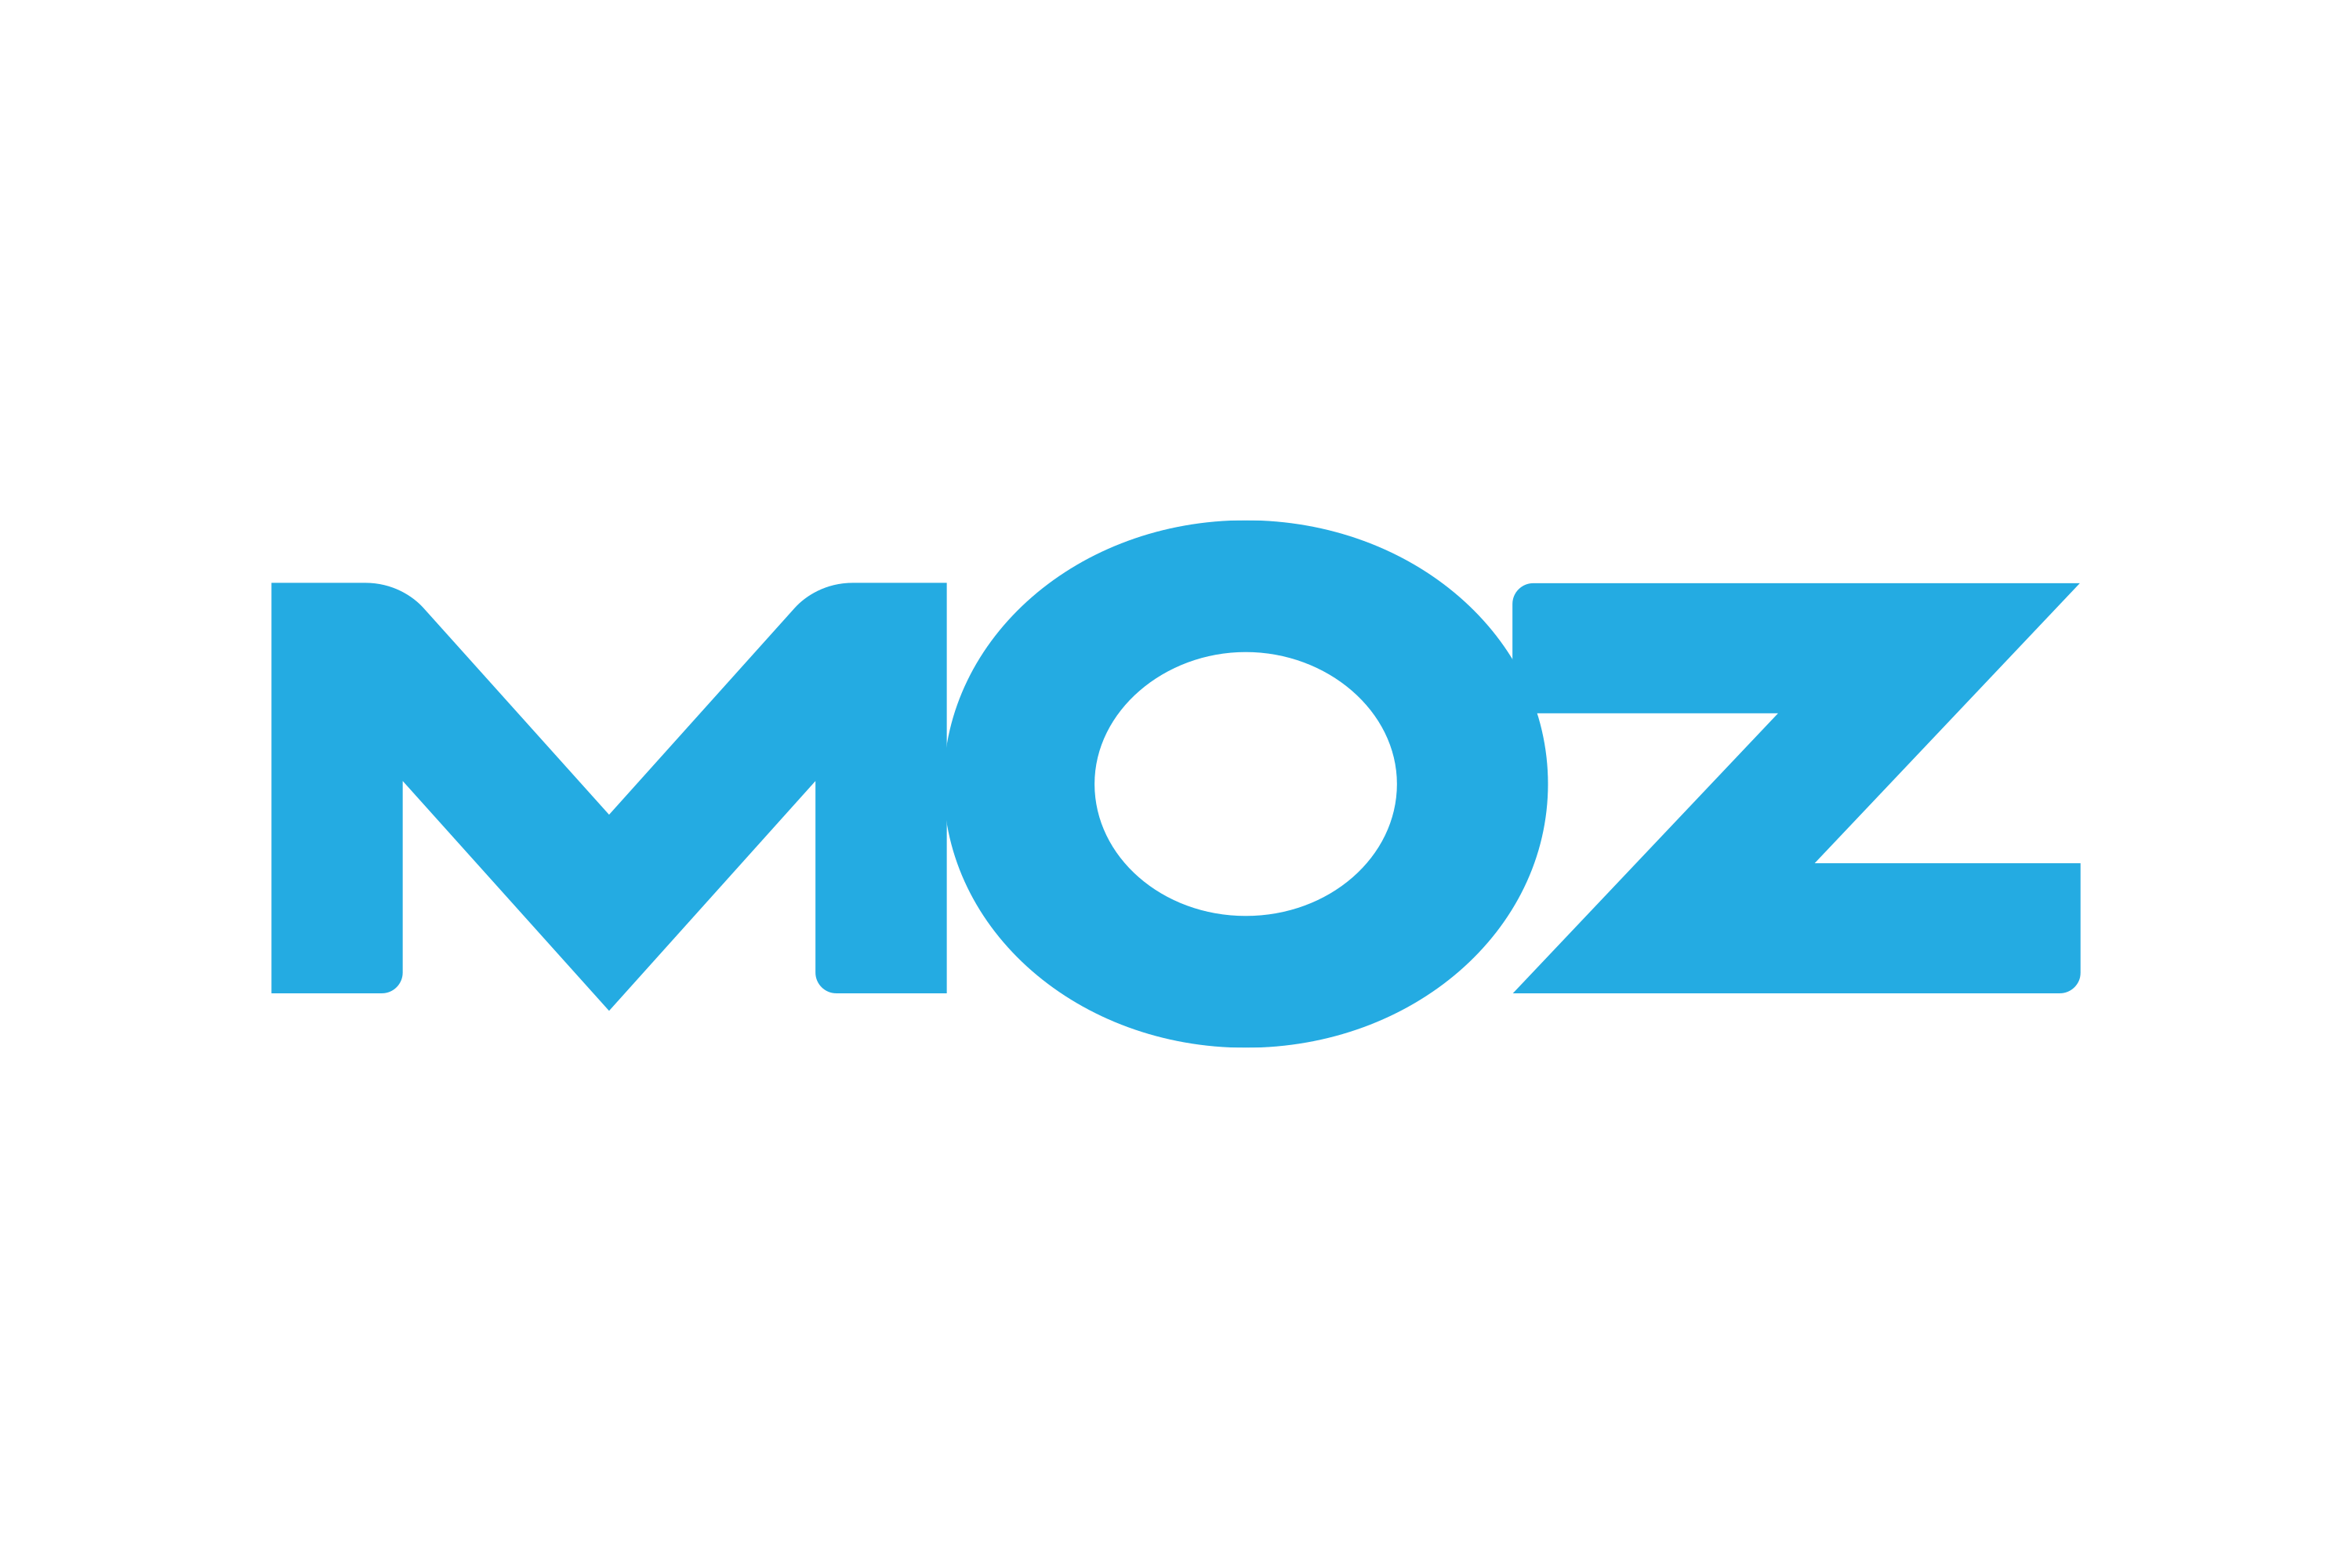 Download Moz Logo in SVG Vector or PNG File Format - Logo.wine